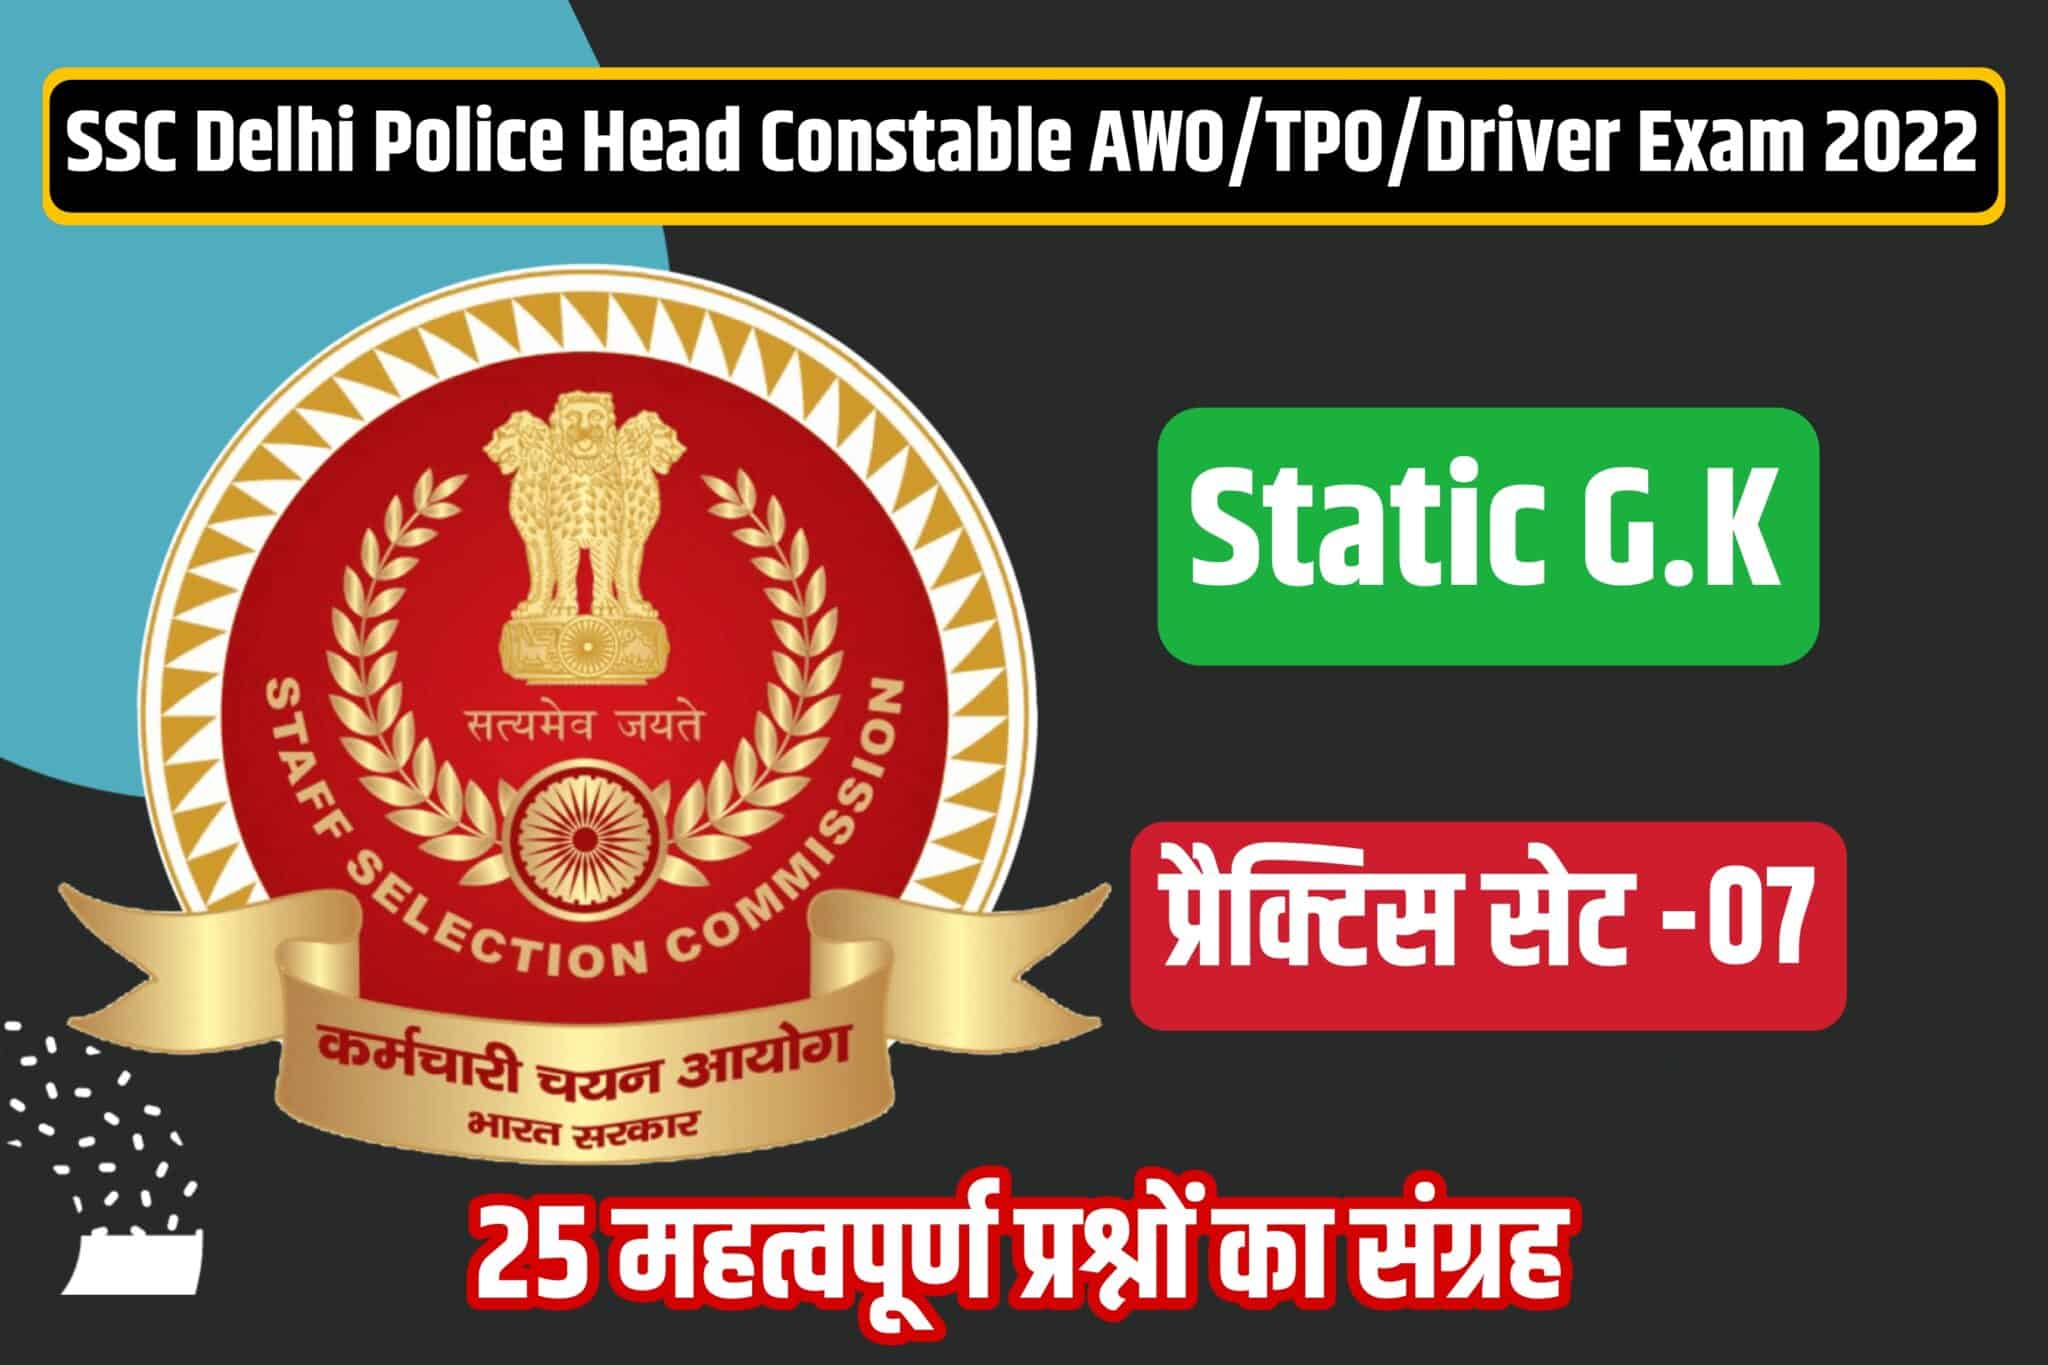 SSC Delhi Police Head Constable/AWO/TPO/Driver Static GK Practice Set 07 | परीक्षा में बैठने से पहले अवश्य पढ़ लें ये महत्वपूर्ण प्रश्न